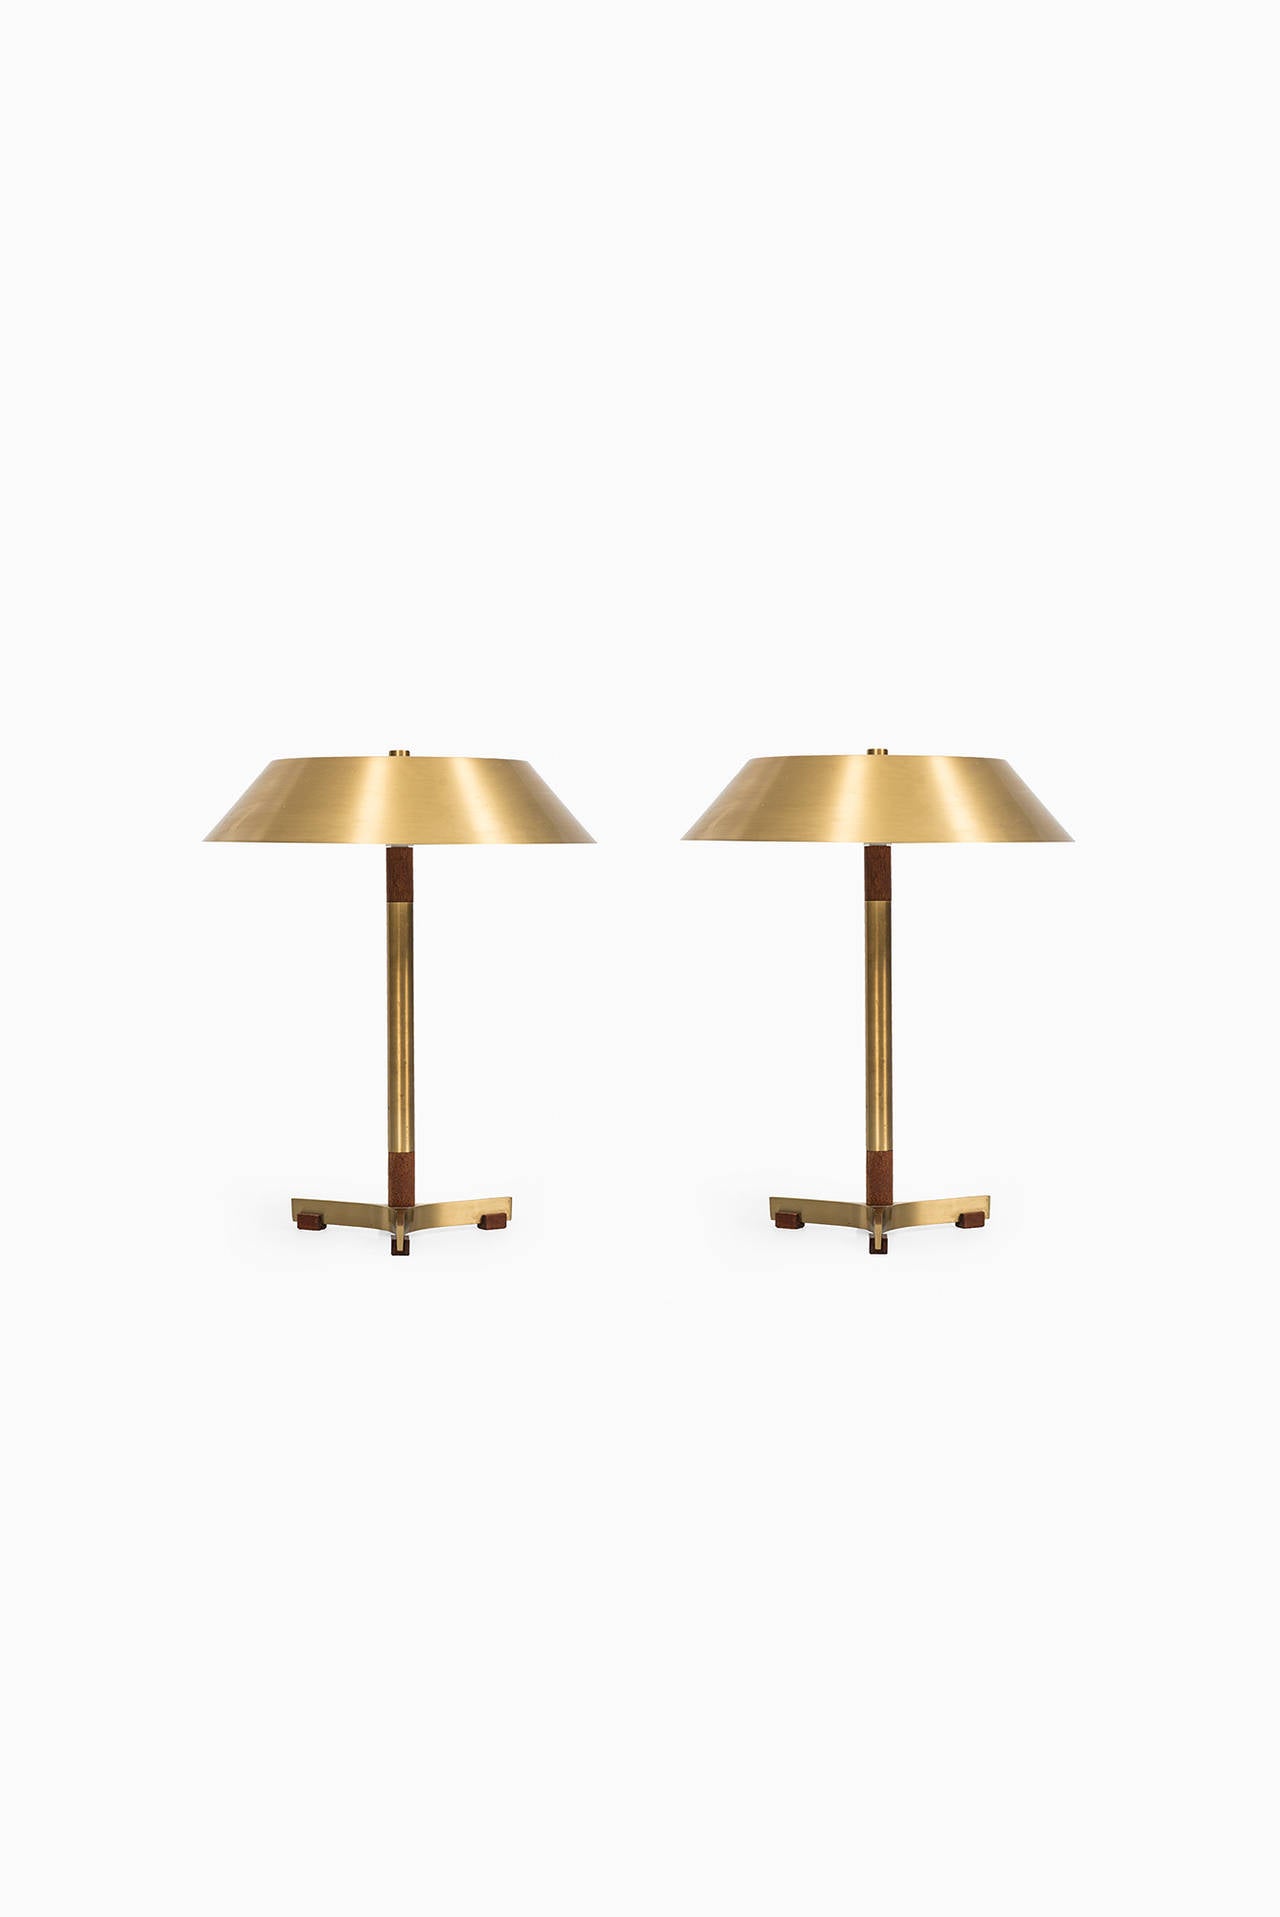 Rare pair of Jo Hammerborg table lamps model President by Fog & Mørup in Denmark.